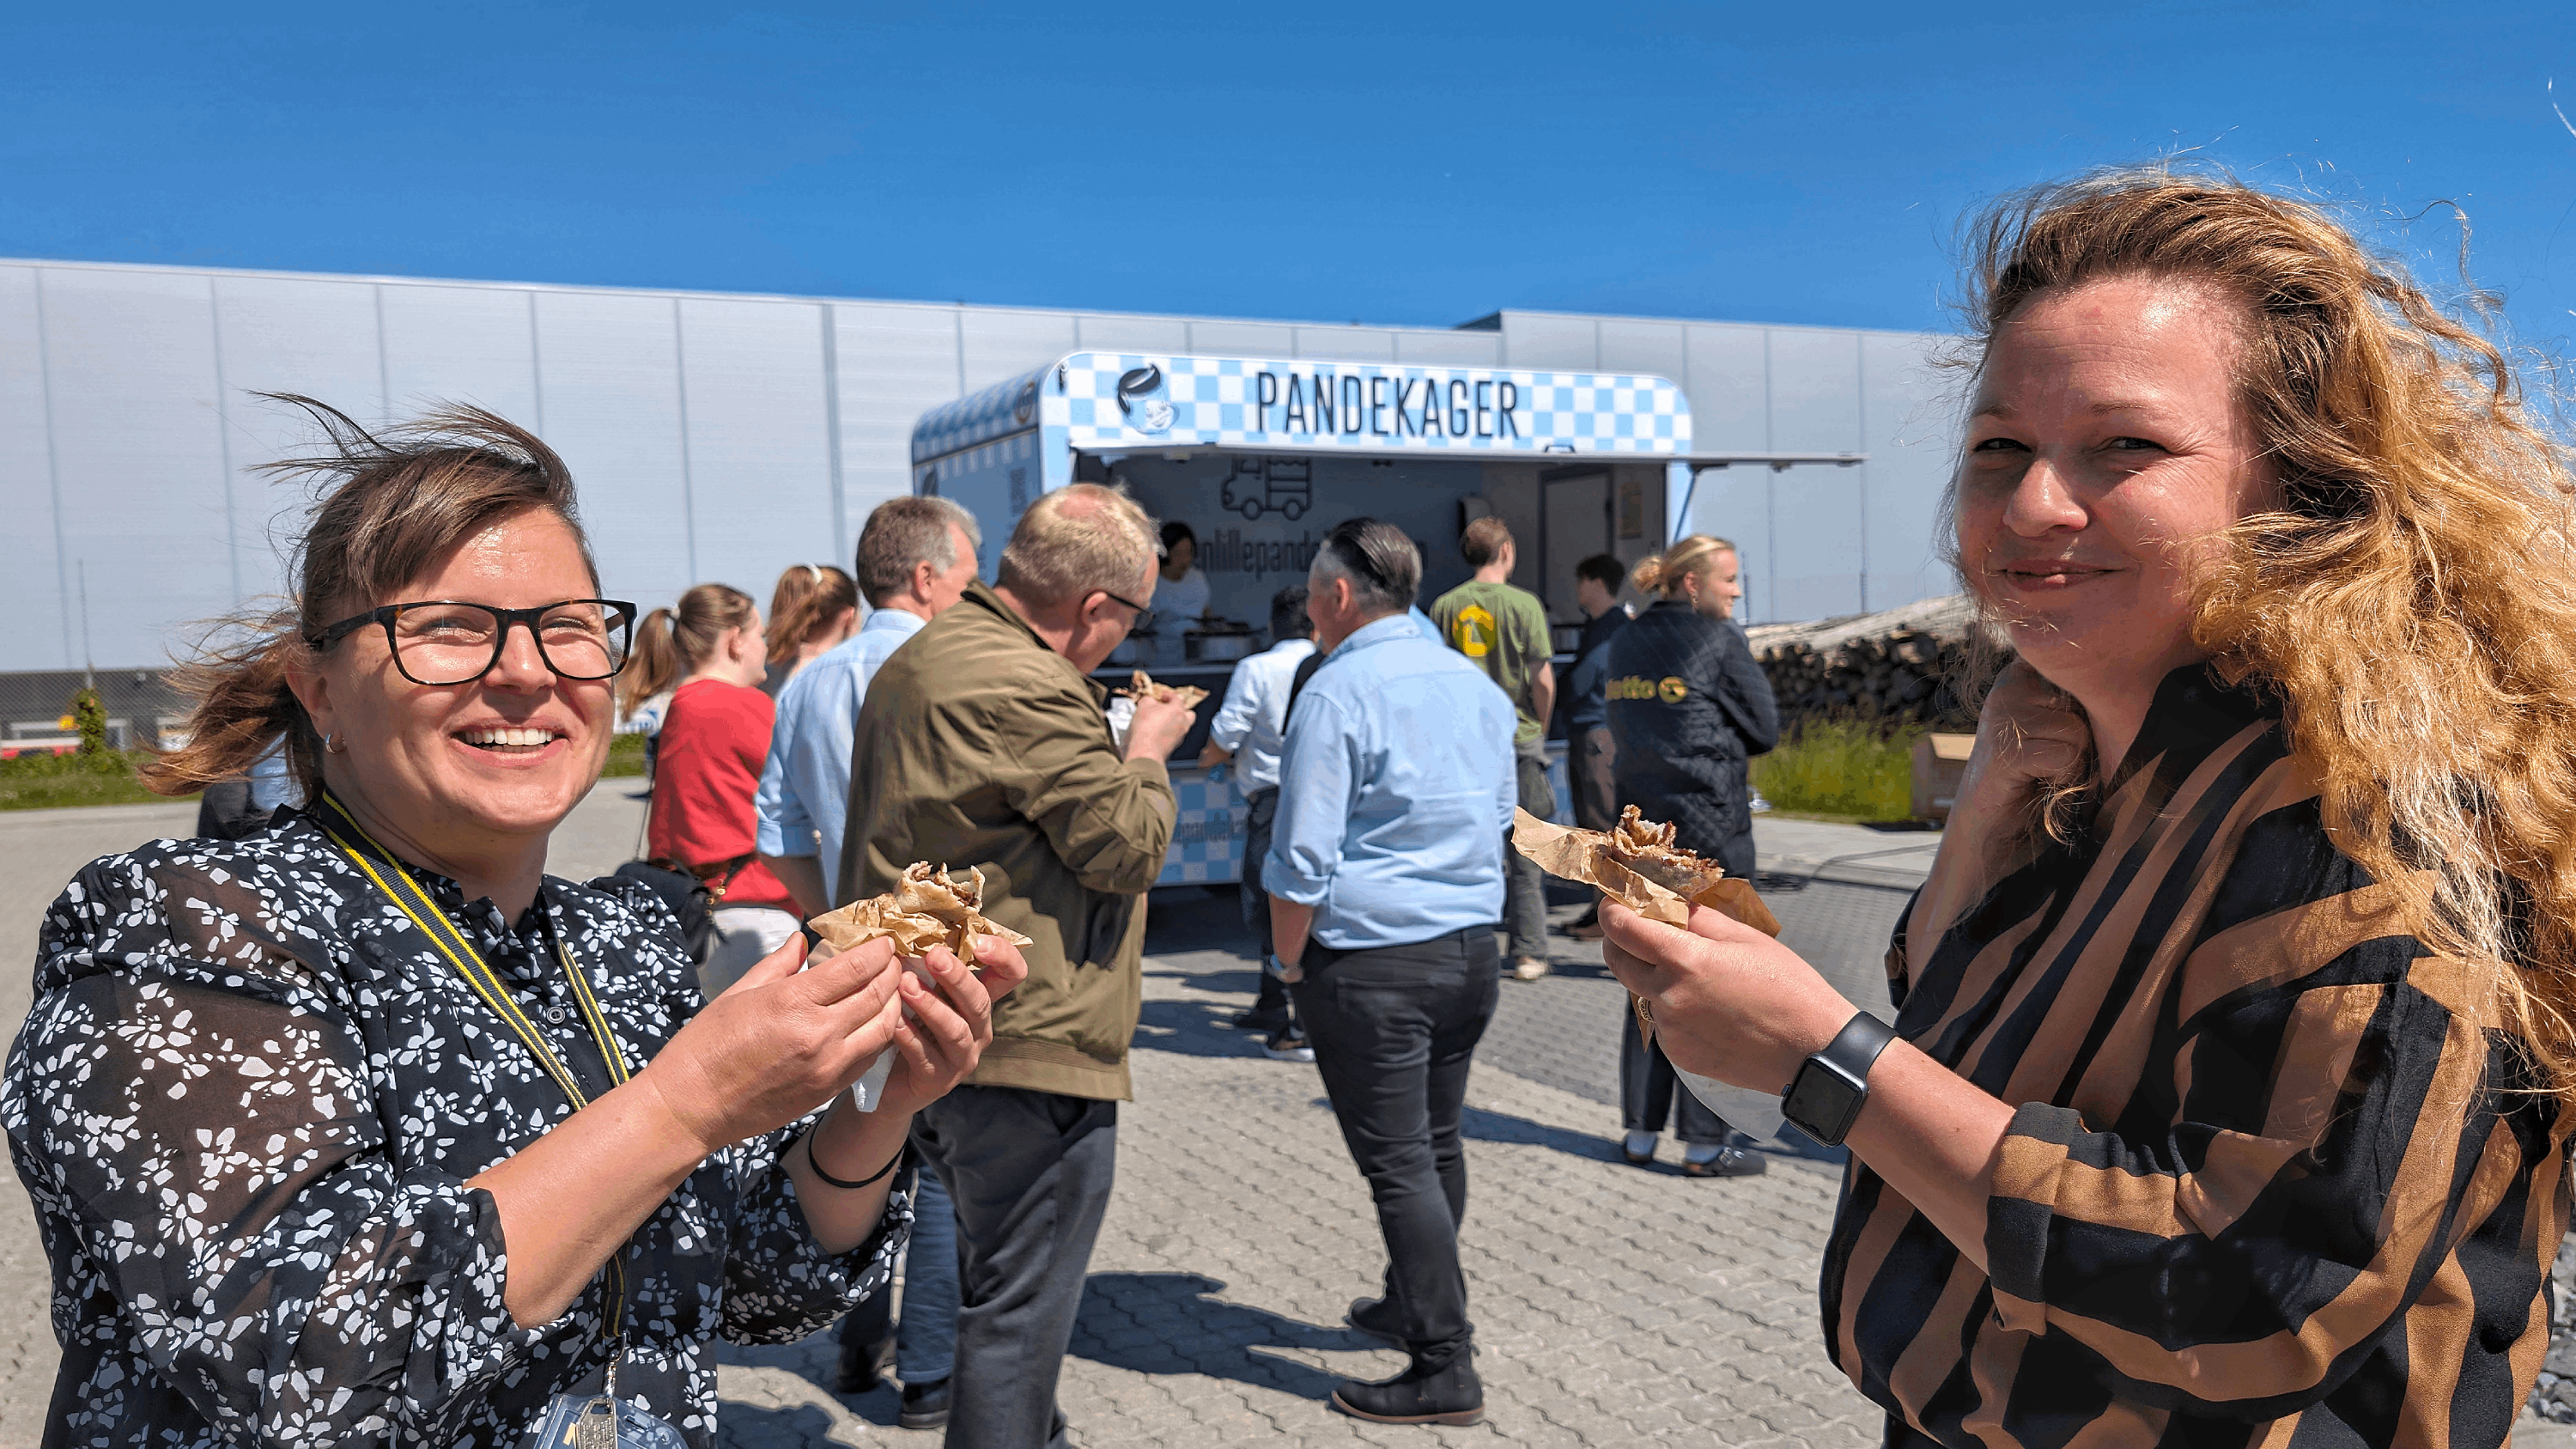 Søde pandekager til glade medarbejdere hos Netto i Køge